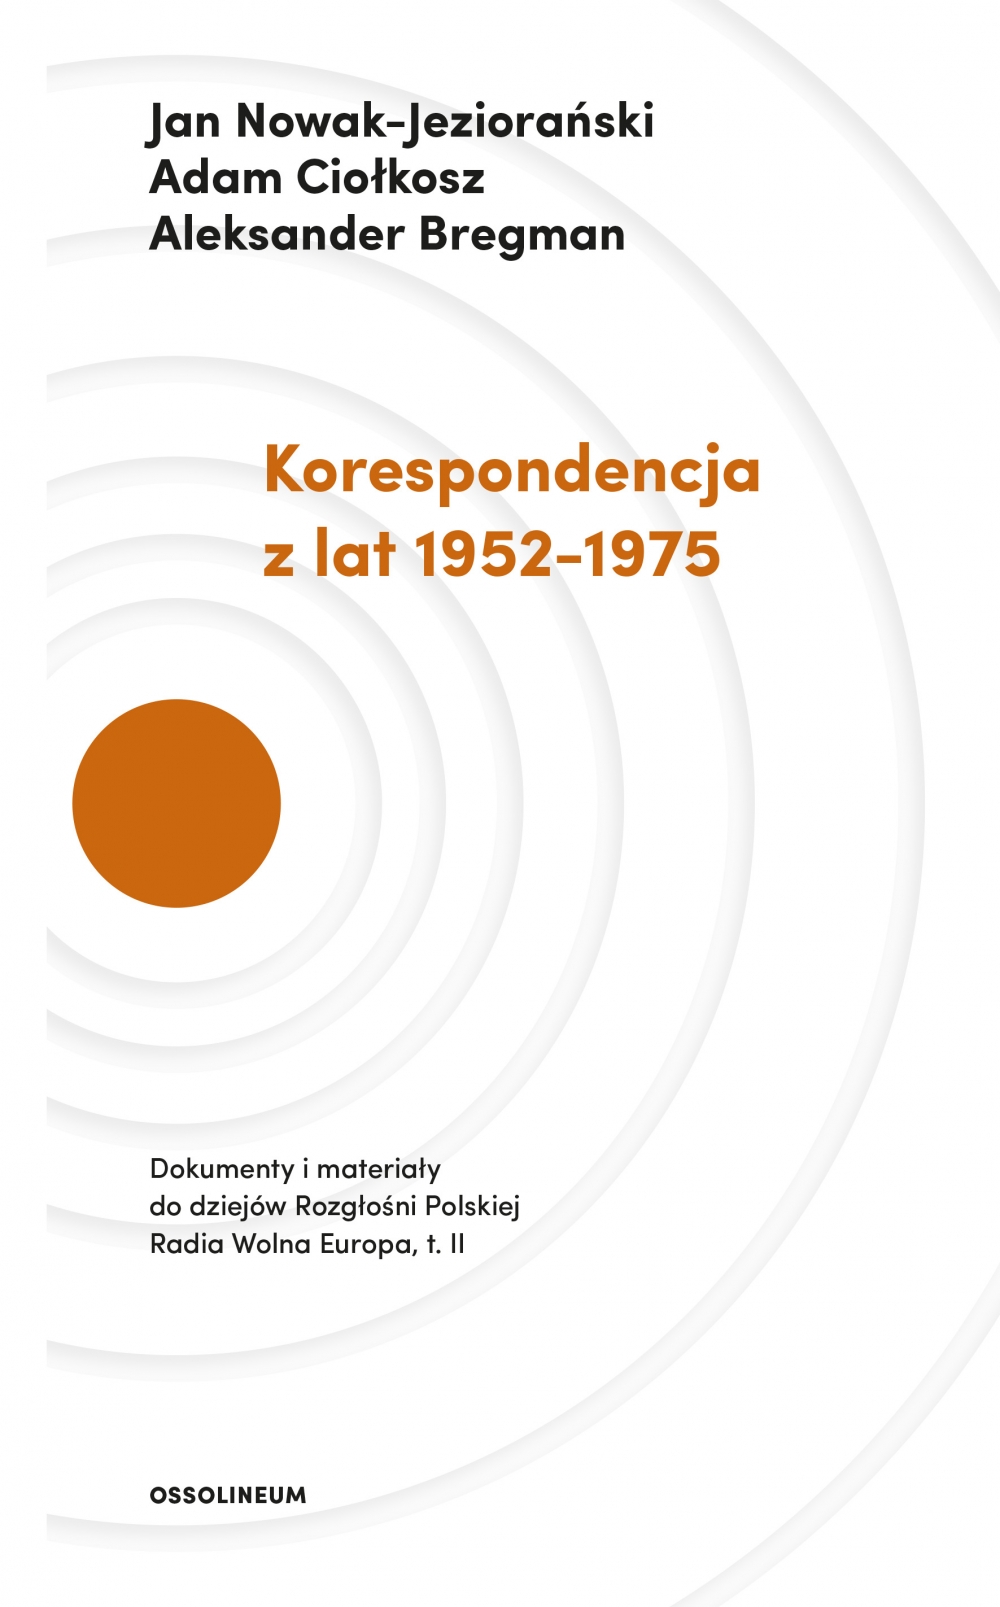 Jan Nowak-Jeziorański, Adam Ciołkosz, Aleksander Bregman - "Korespondencja z lat 1952-1975" (Ossolineum, 2018)